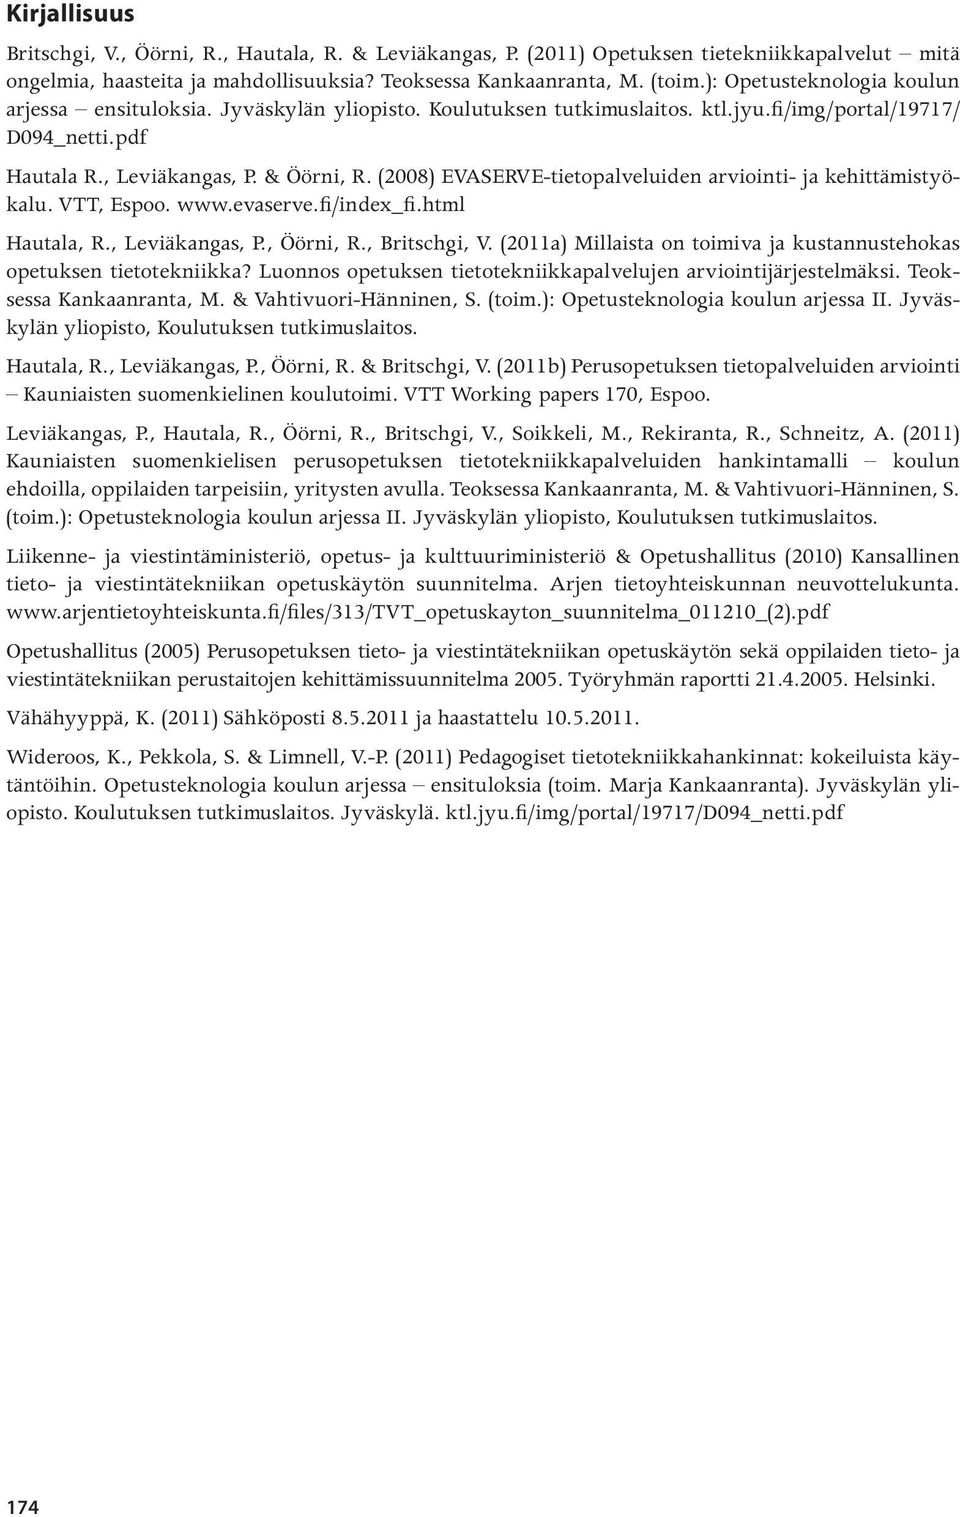 (2008) EVASERVE-tietopalveluiden arviointi- ja kehittämistyökalu. VTT, Espoo. www.evaserve.fi/index_fi.html Hautala, R., Leviäkangas, P., Öörni, R., Britschgi, V.